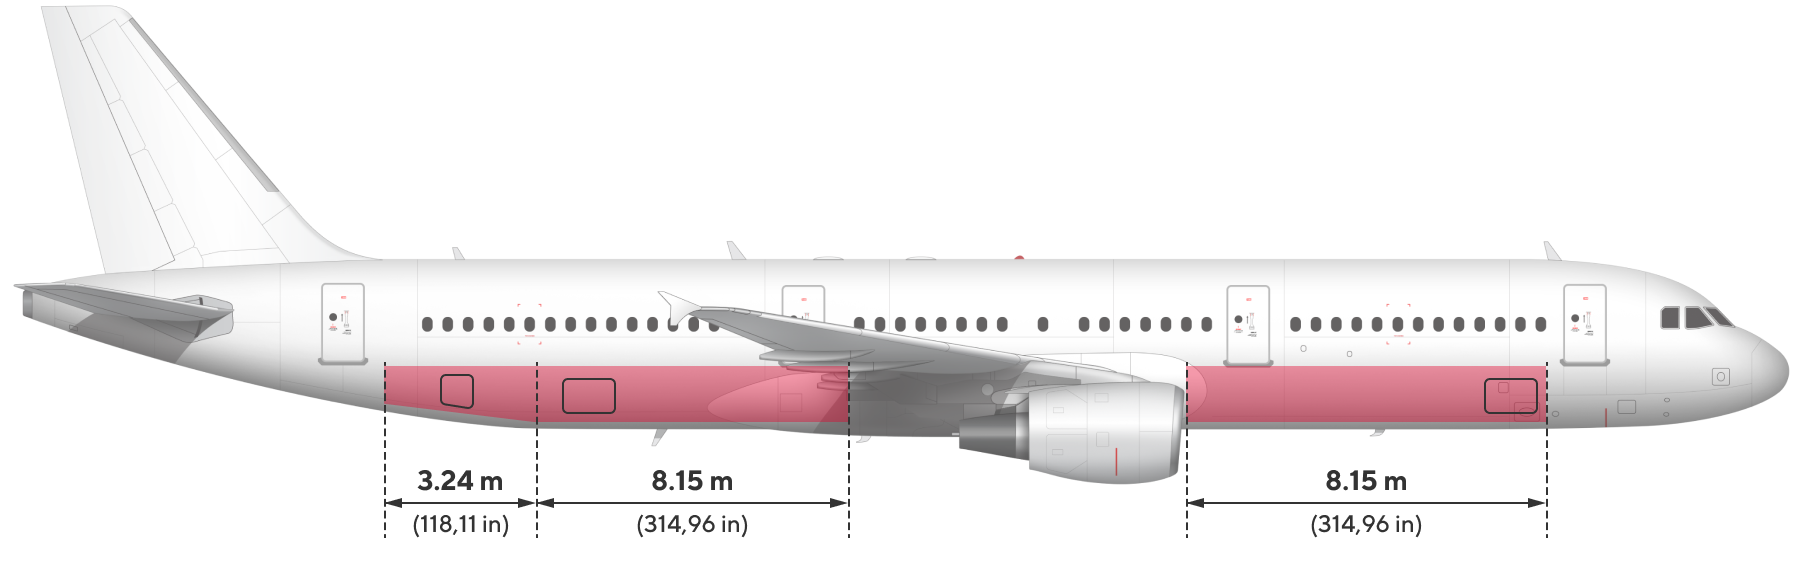 Airbus-321